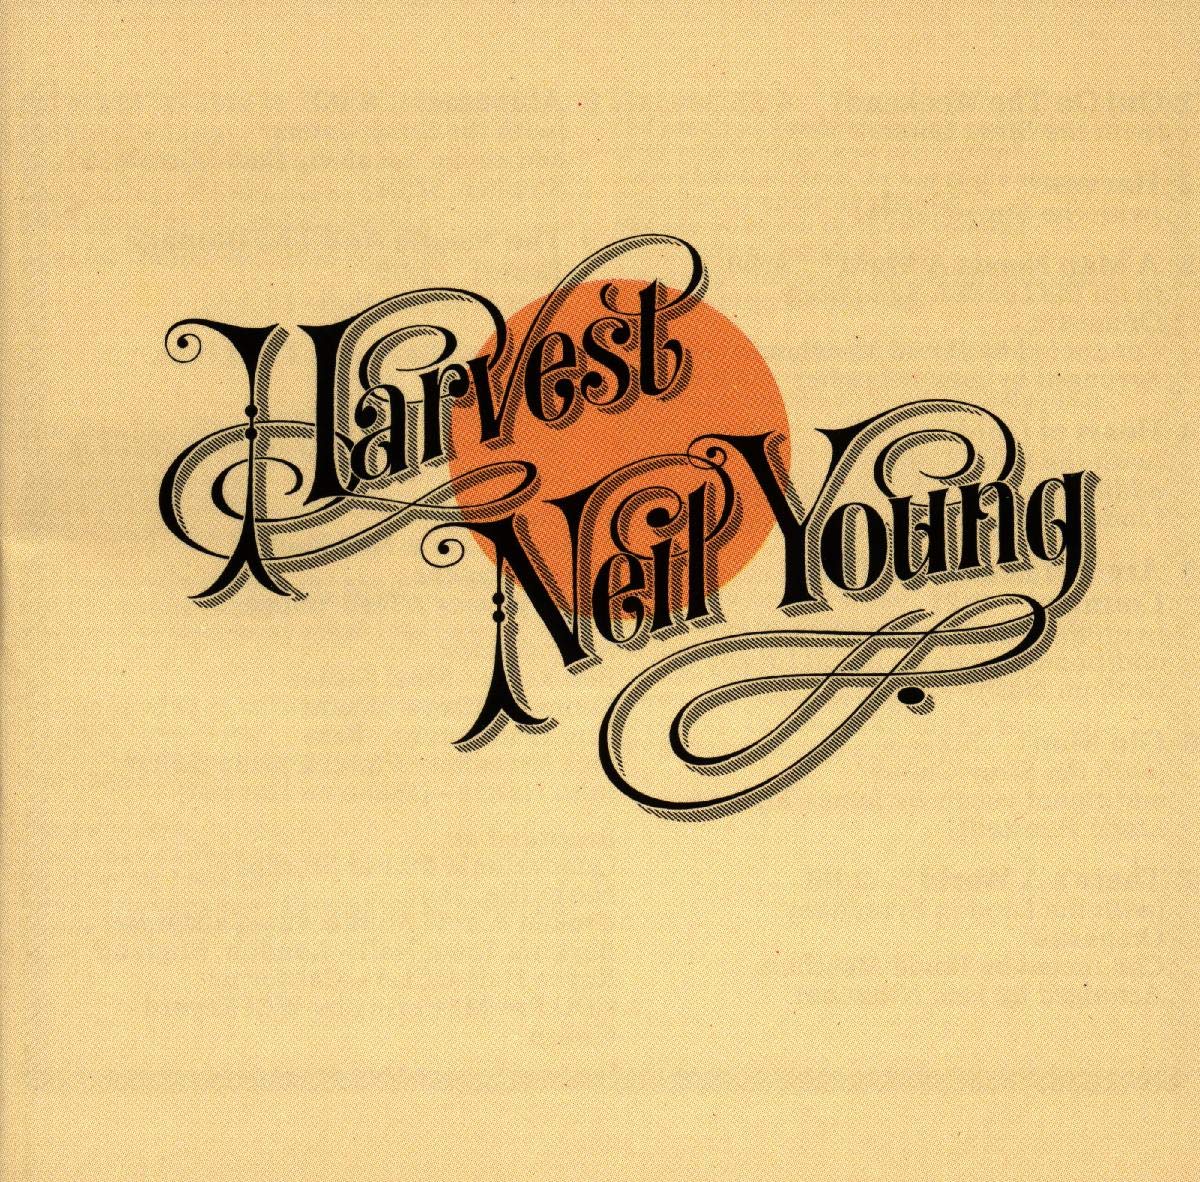 Neil Young "Harvest" Lp